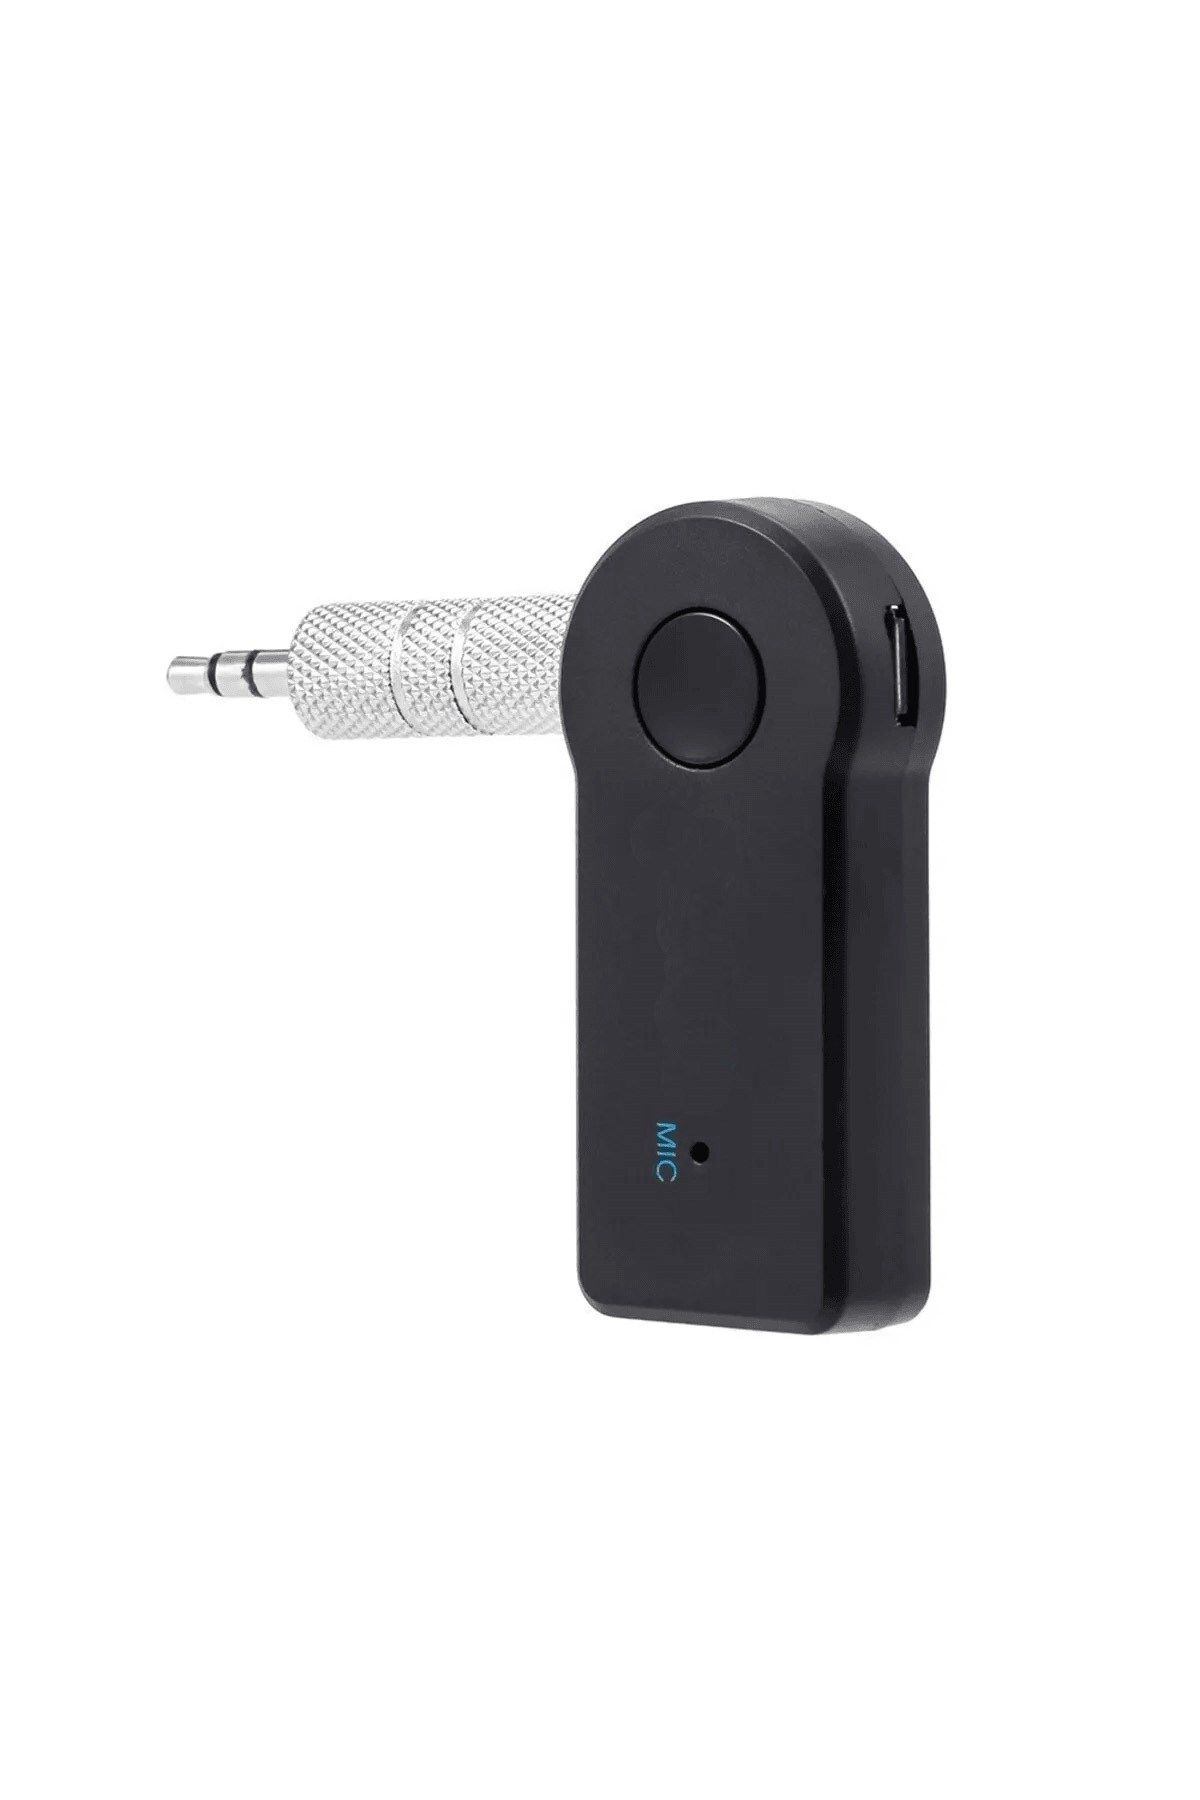 HİQONİC Araba Müzik Receviar Telefon Ipad Araç Kulaklık Ses Sistemi Destekli Araç Içi Bluetooth Dönüştürücü